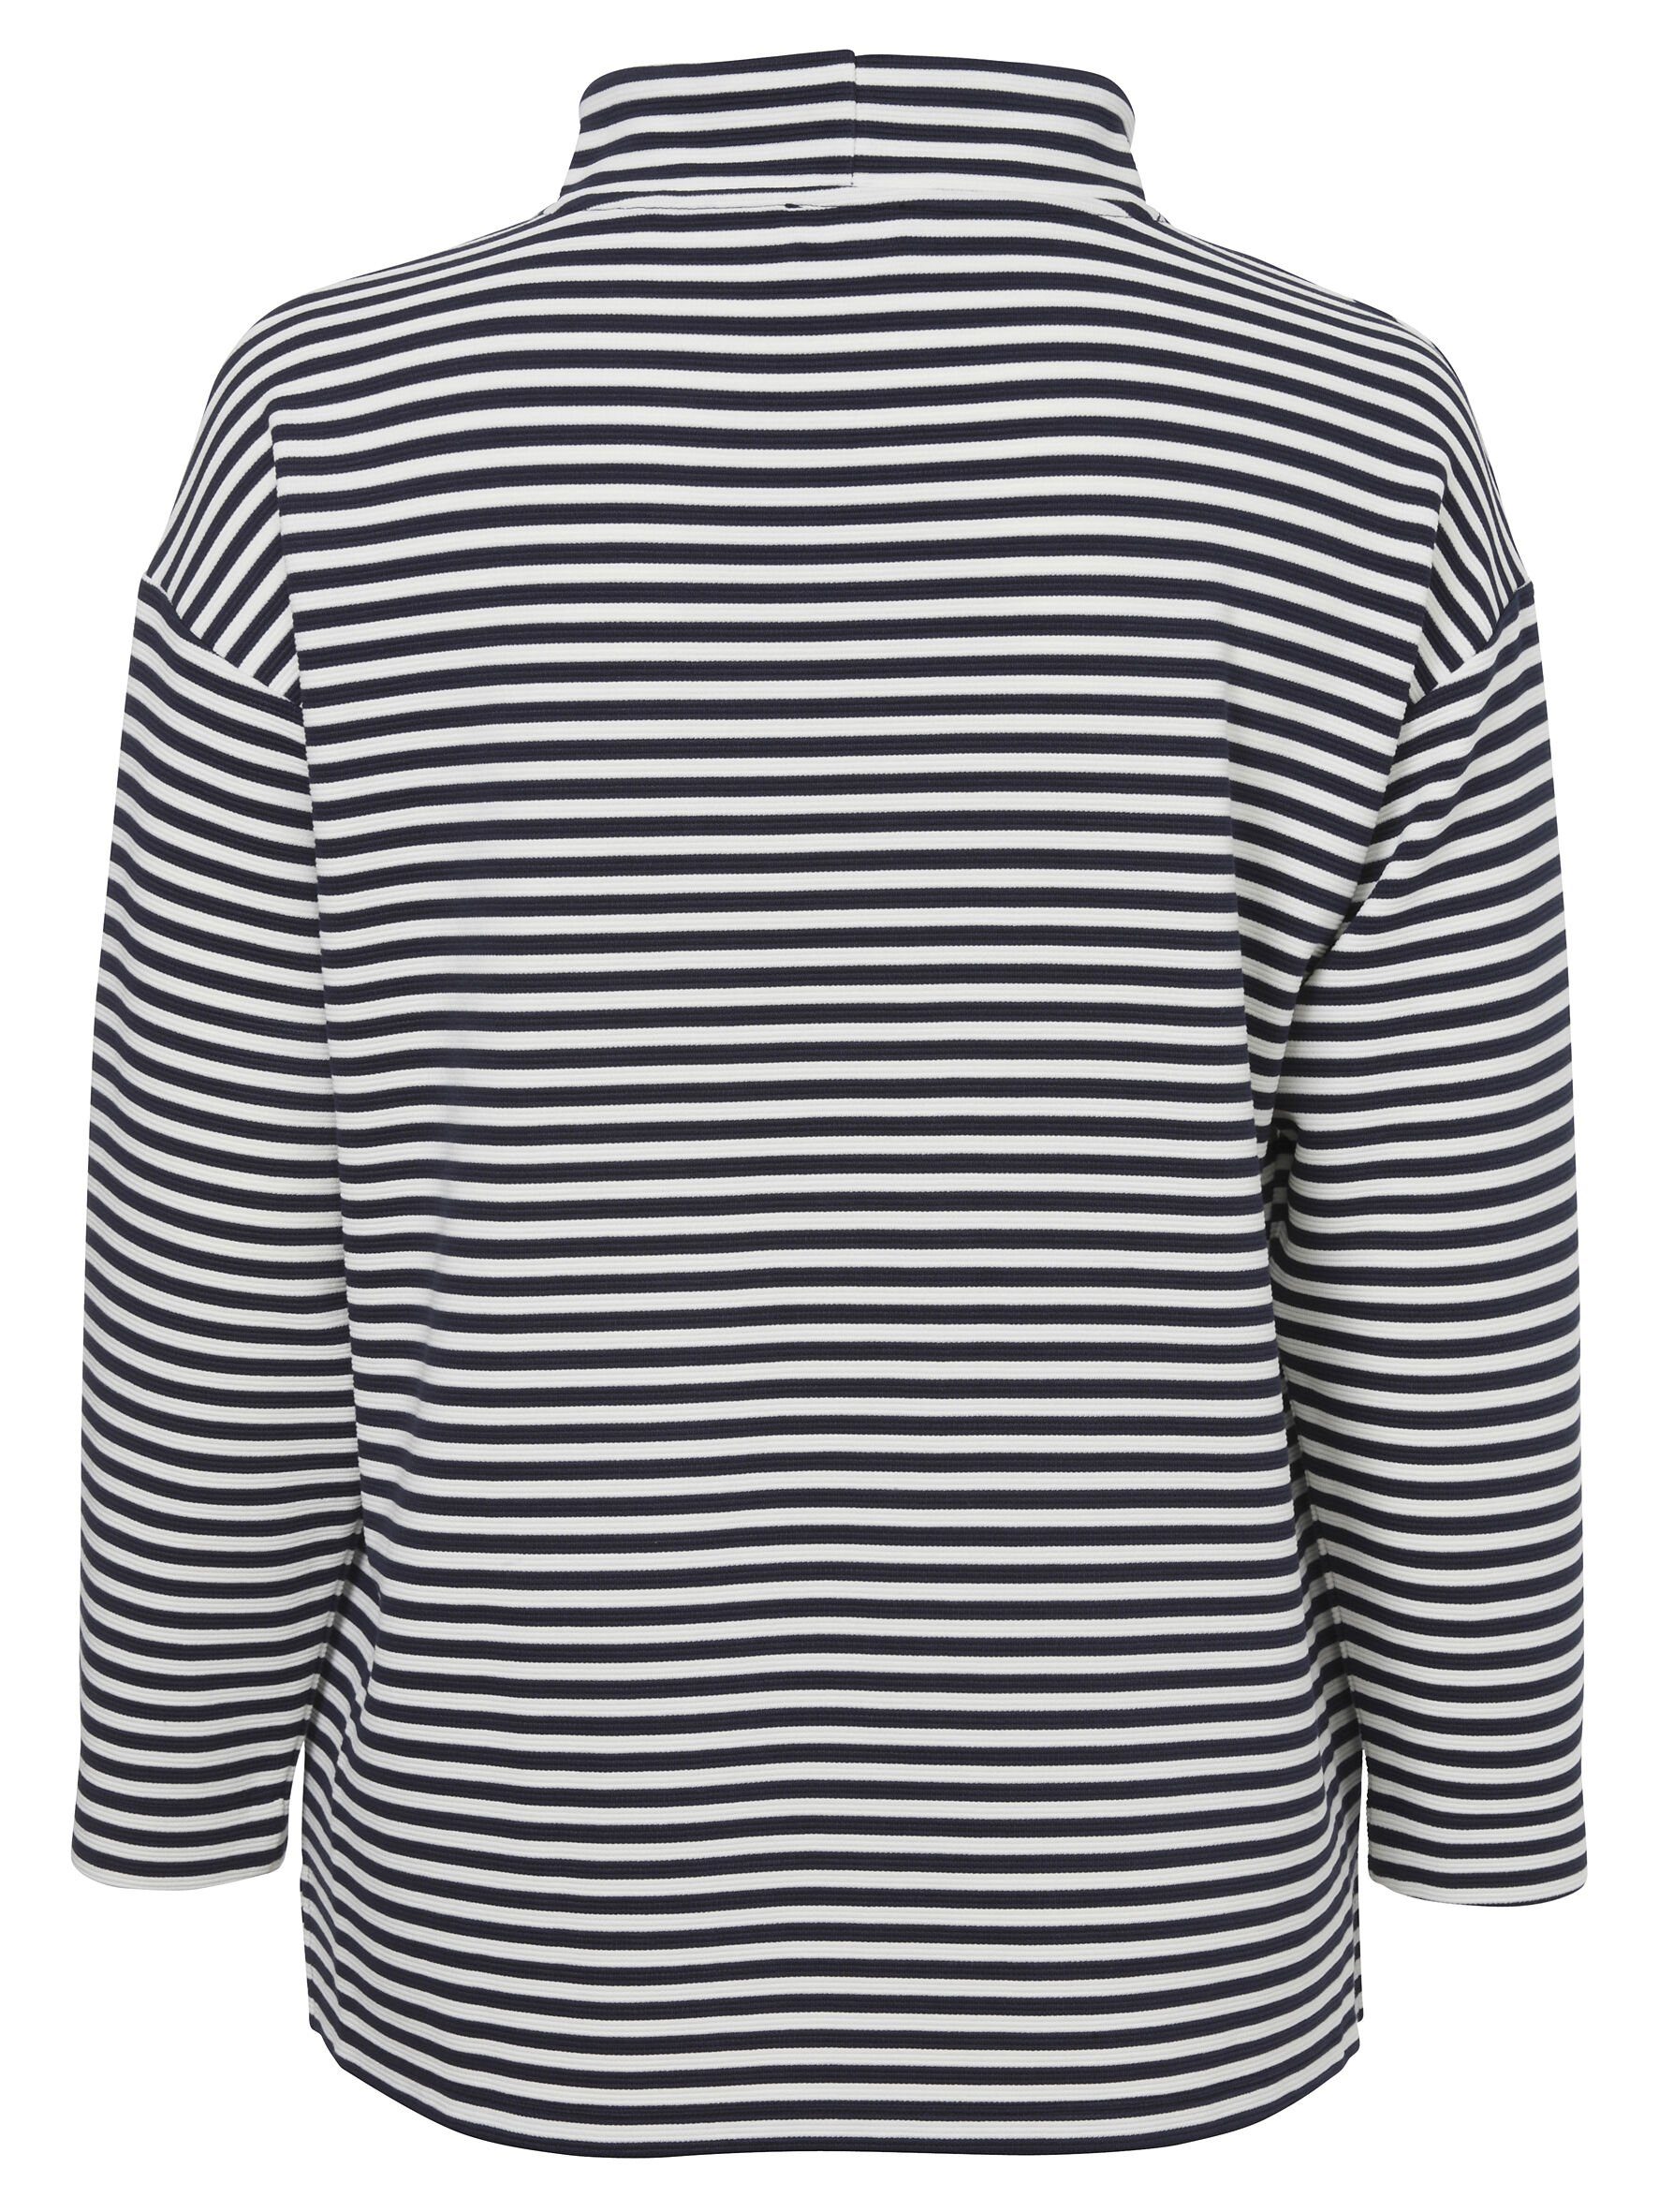 VIA APPIA DUE Sweatshirt mit Sweatshirt Sportives mit Gestreiften Allover-Muster Schultern überschnittenen